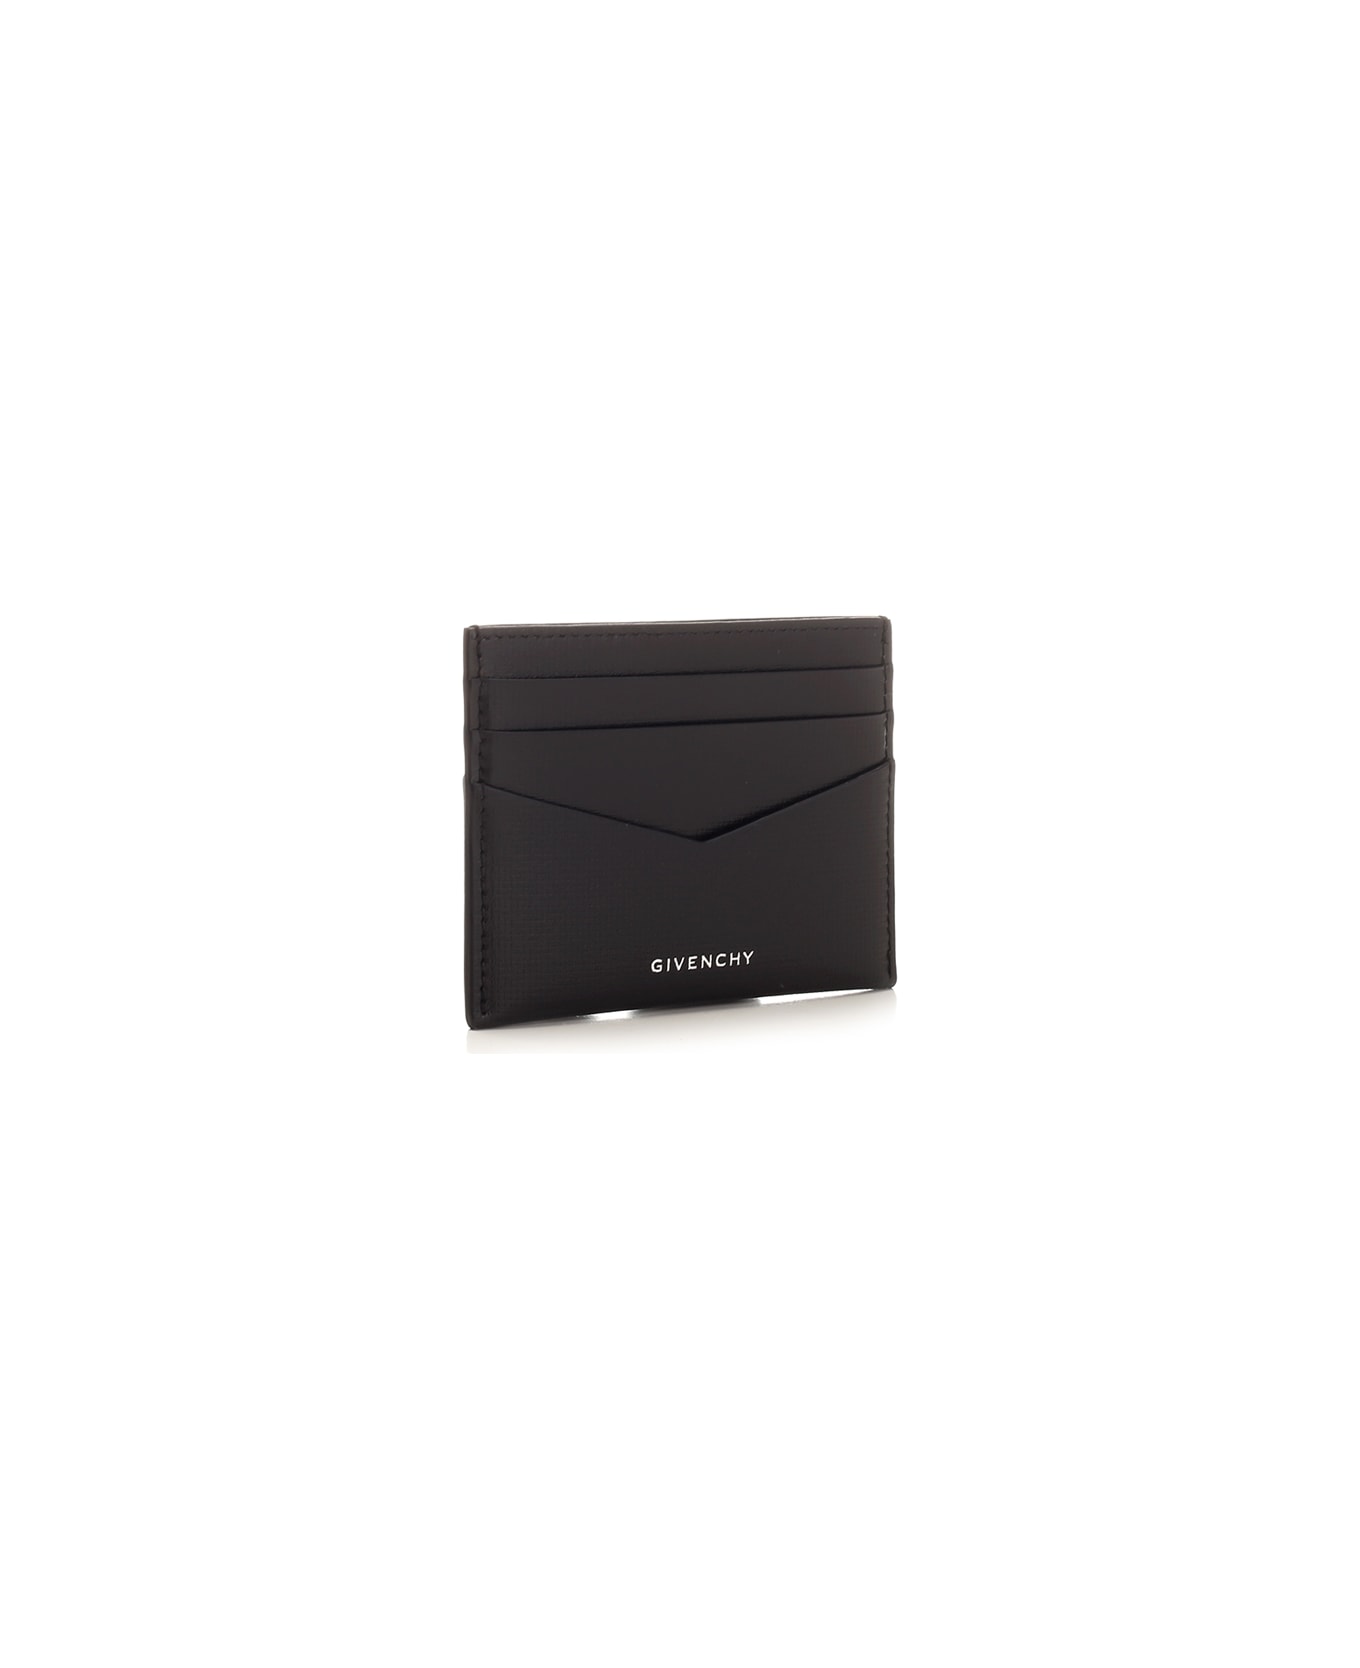 Givenchy Black Leather Card Holder - BLACK